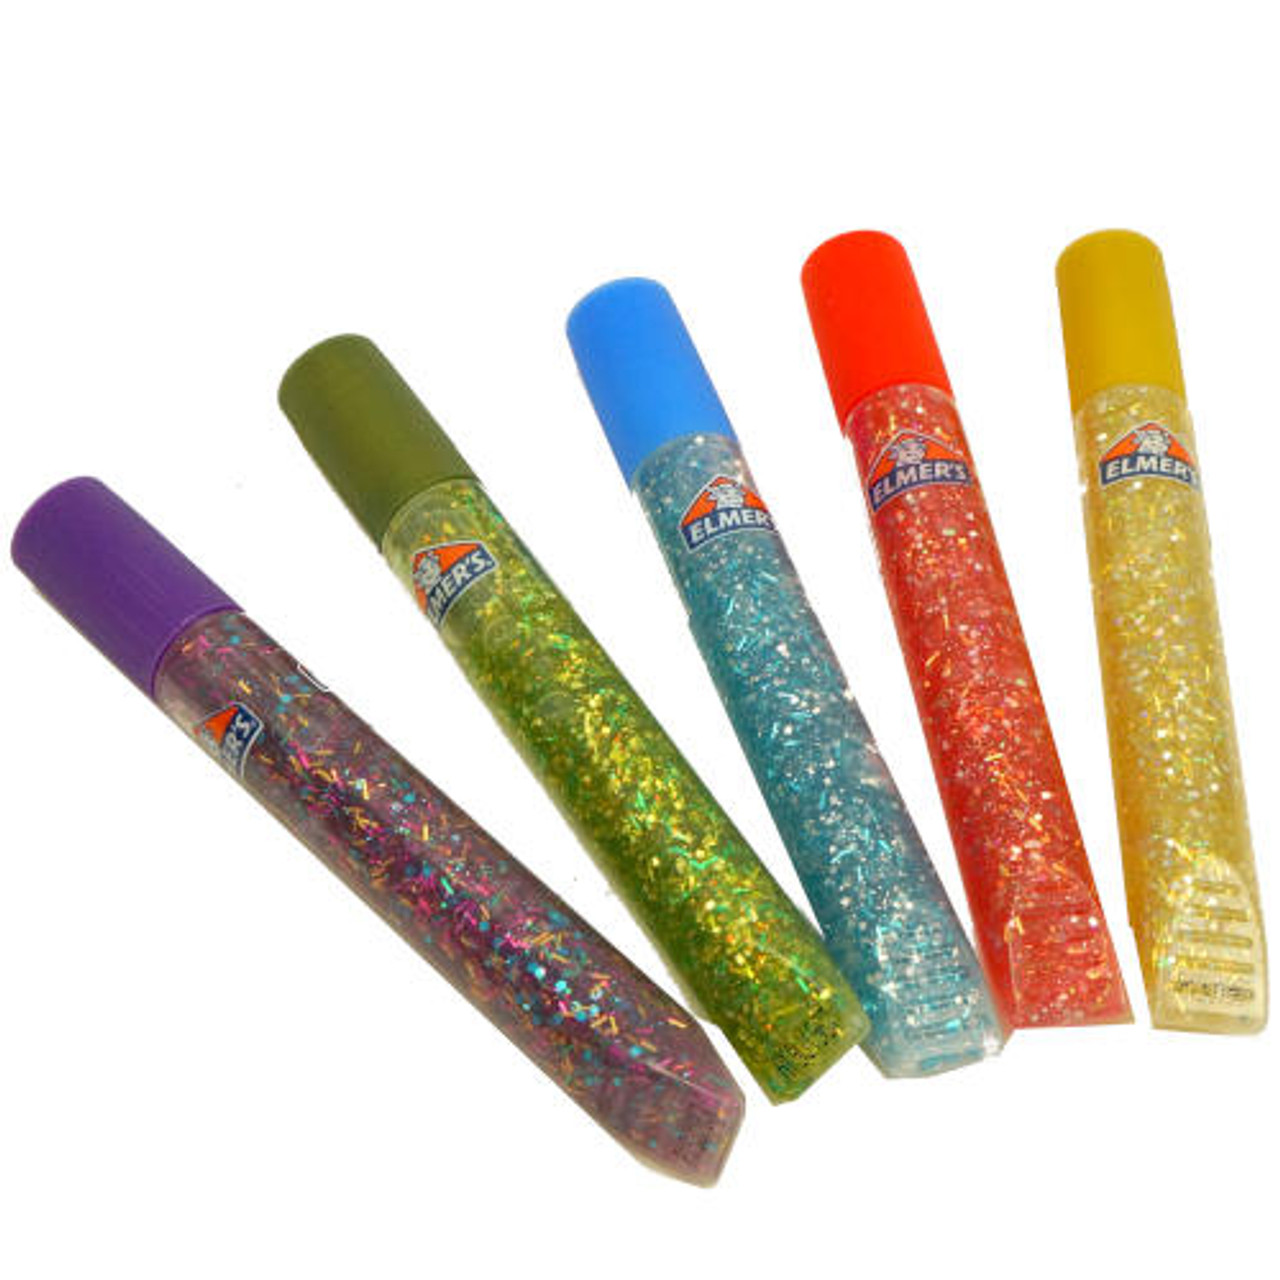 Elmer's® 3D Glitter Paint Classic Colors 5 Pen Set